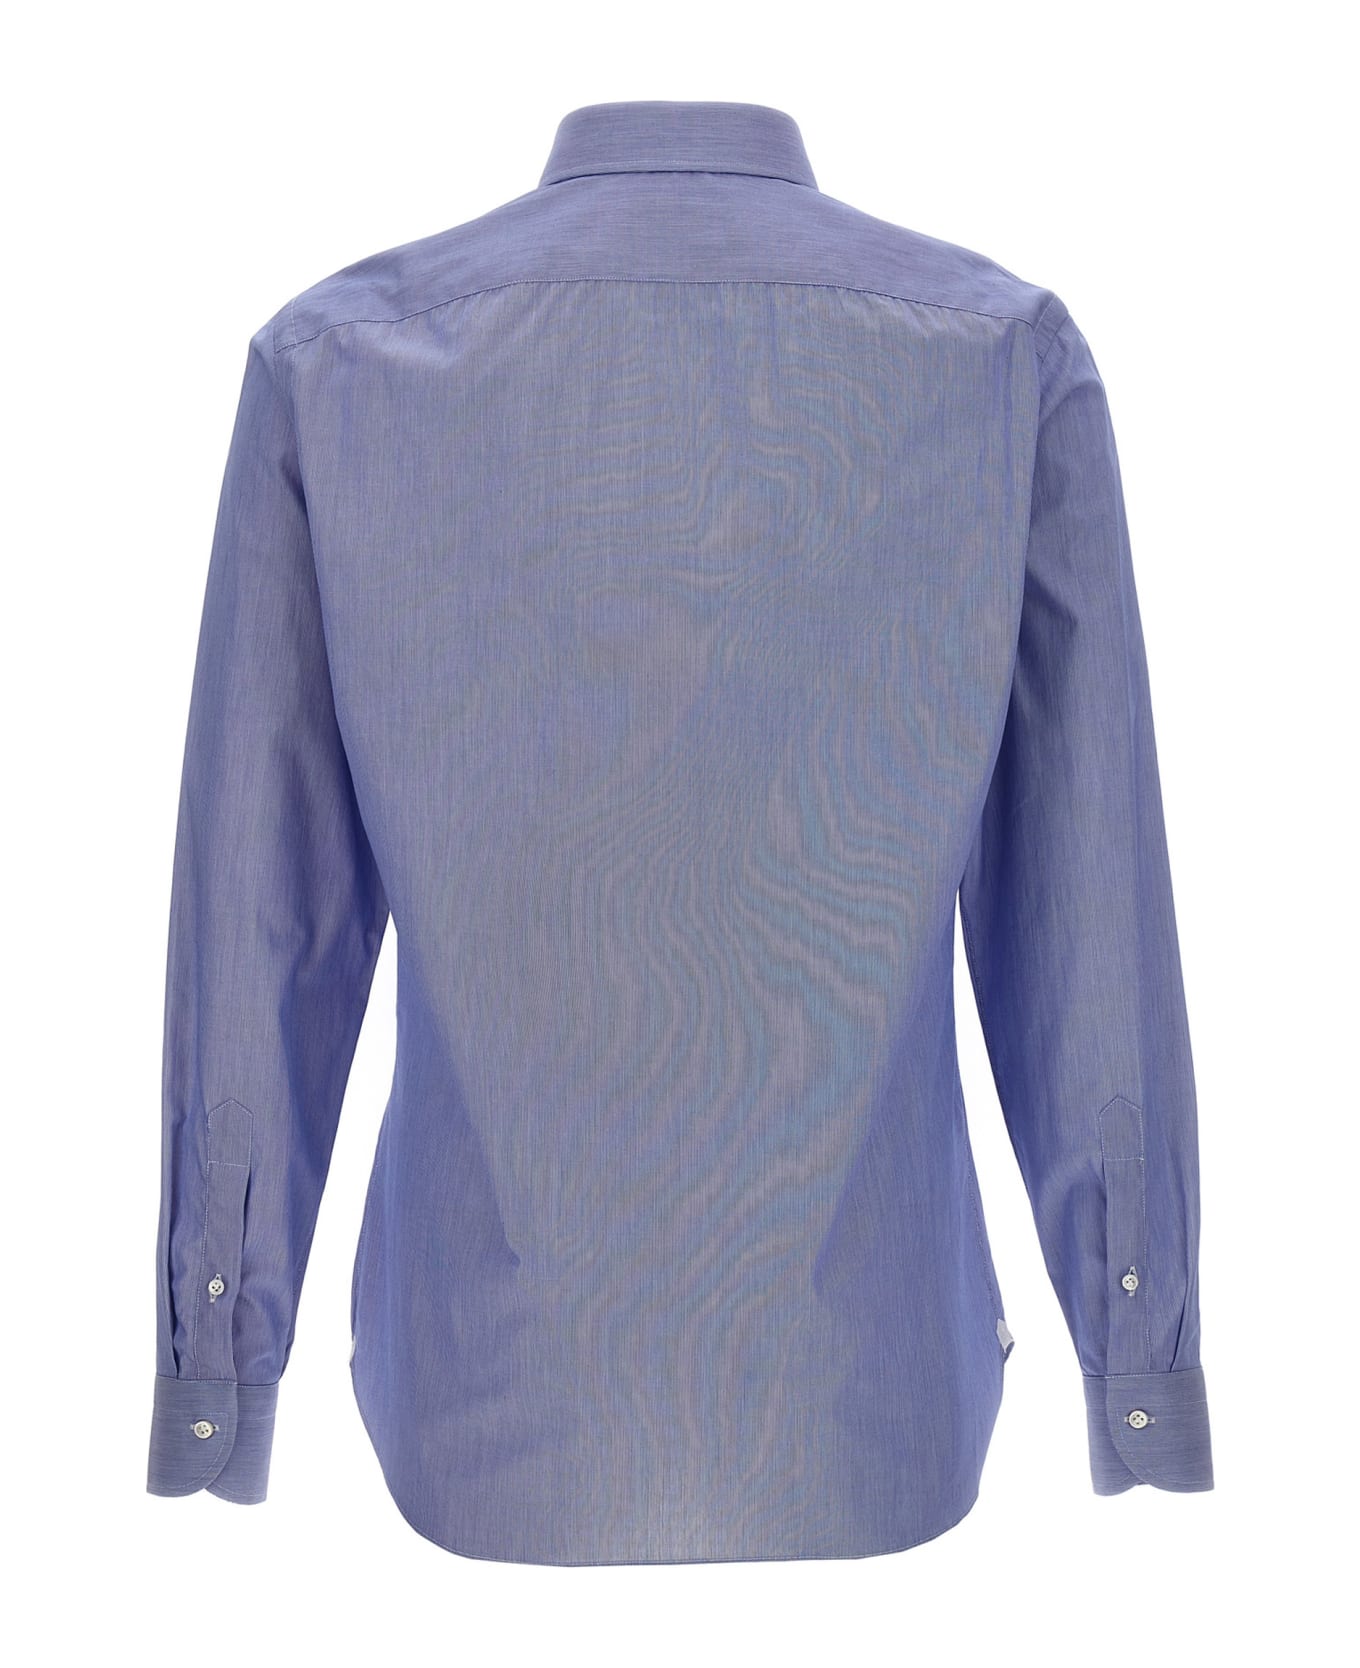 Borriello Napoli 'falso Unito' Cotton Shirt - Light Blue